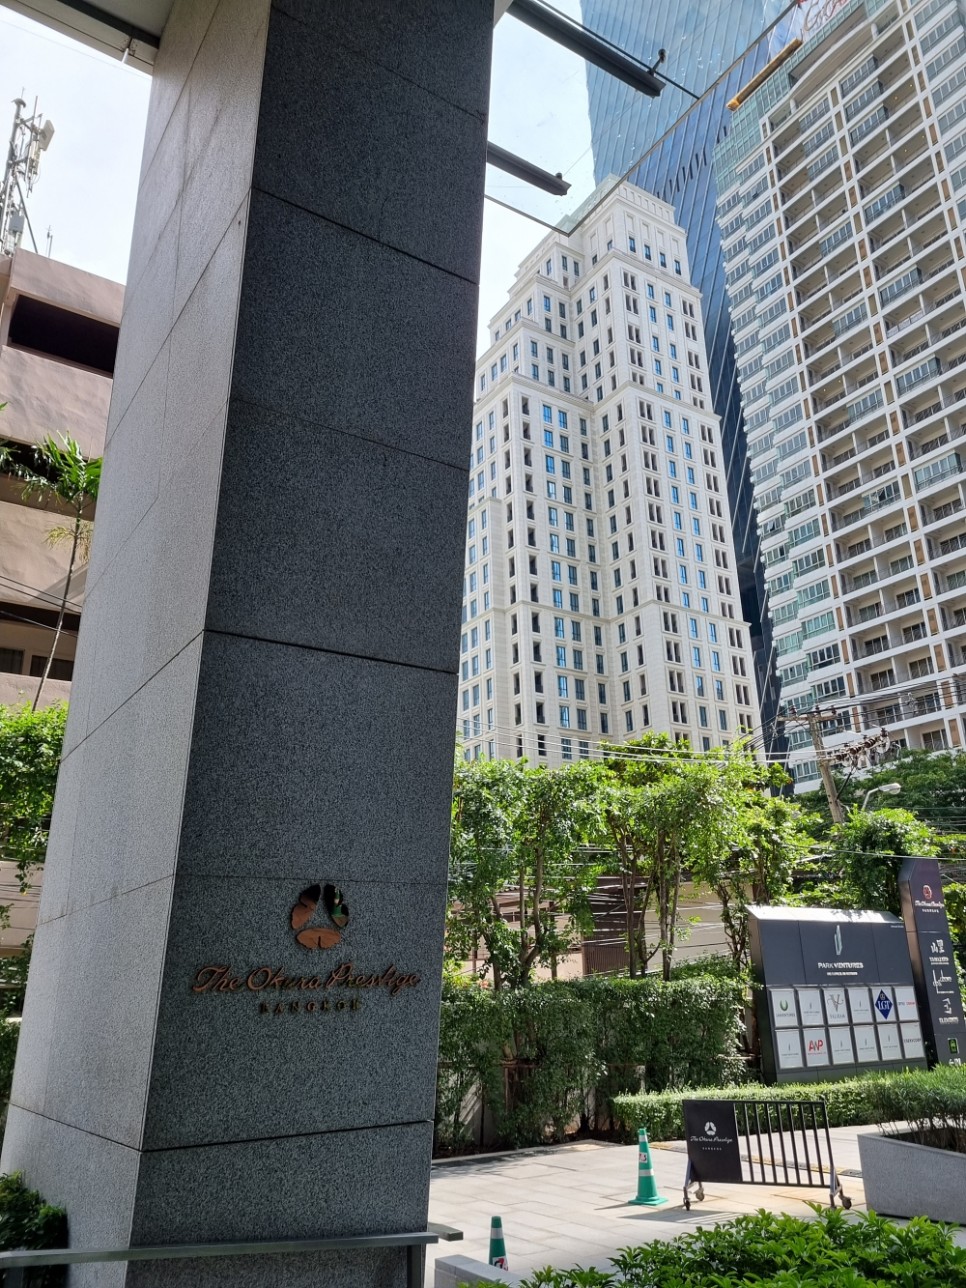 태국 방콕 자유여행 숙소 추천 더 오쿠라 프레스티지 방콕 5성급 호텔